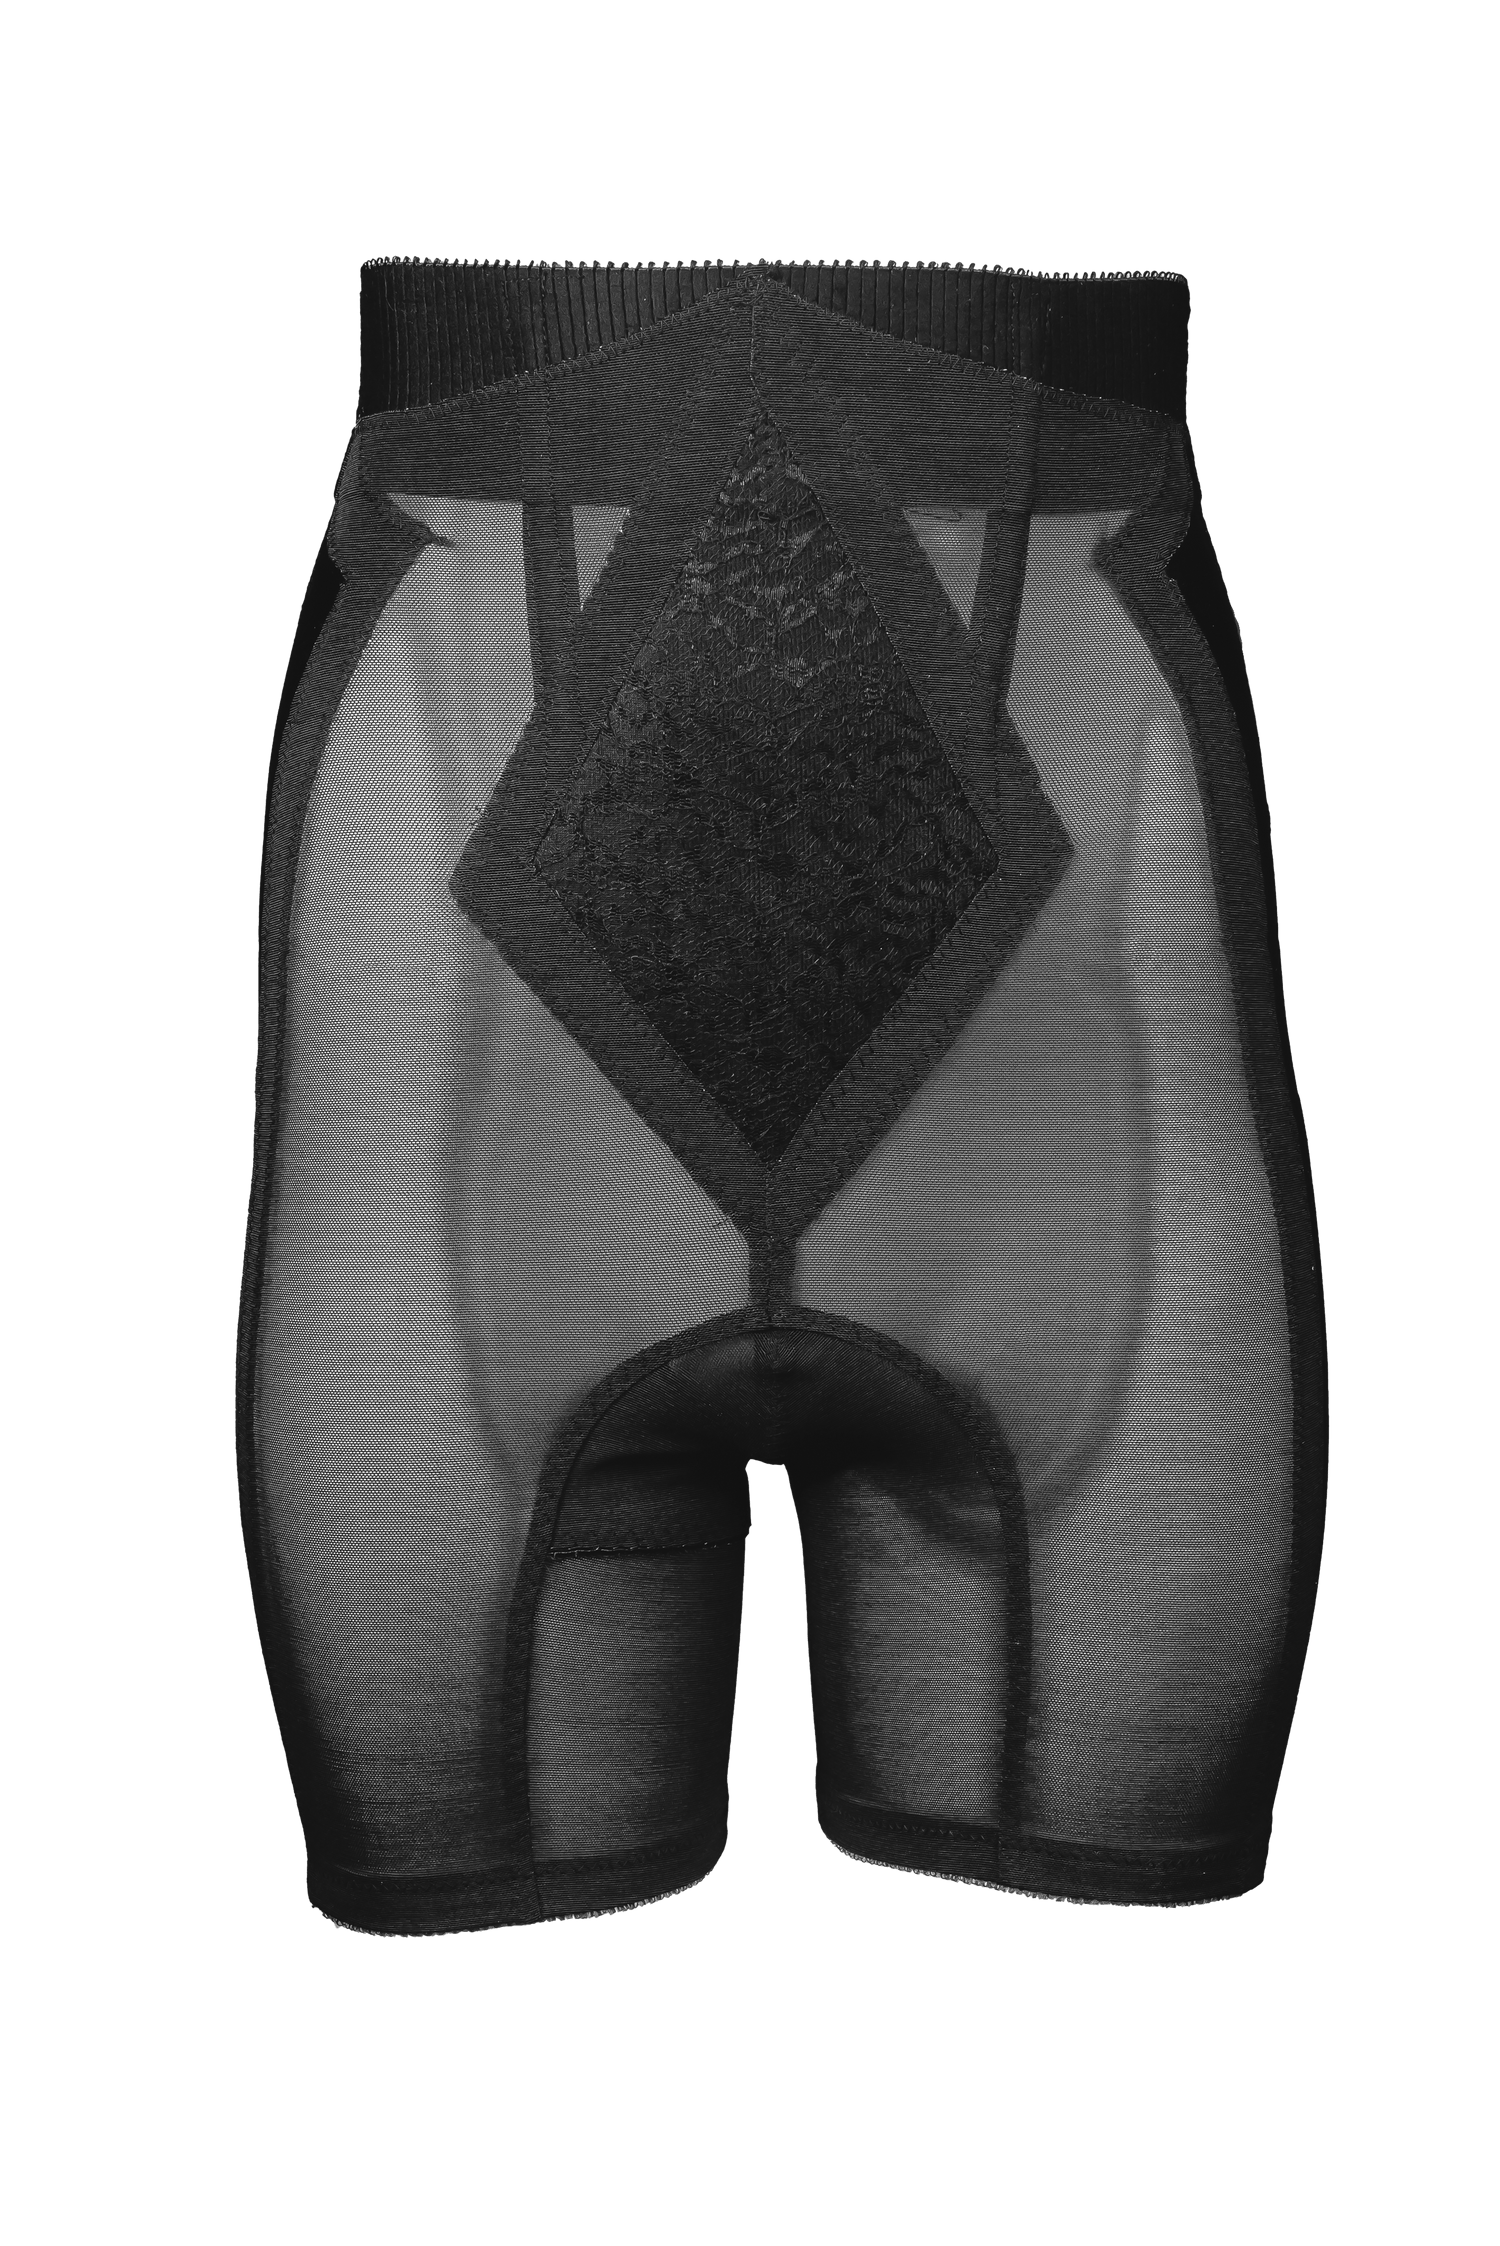 Rago 696 High Waist Stomach and Leg Shaper - Firm Control – Rago Shapewear